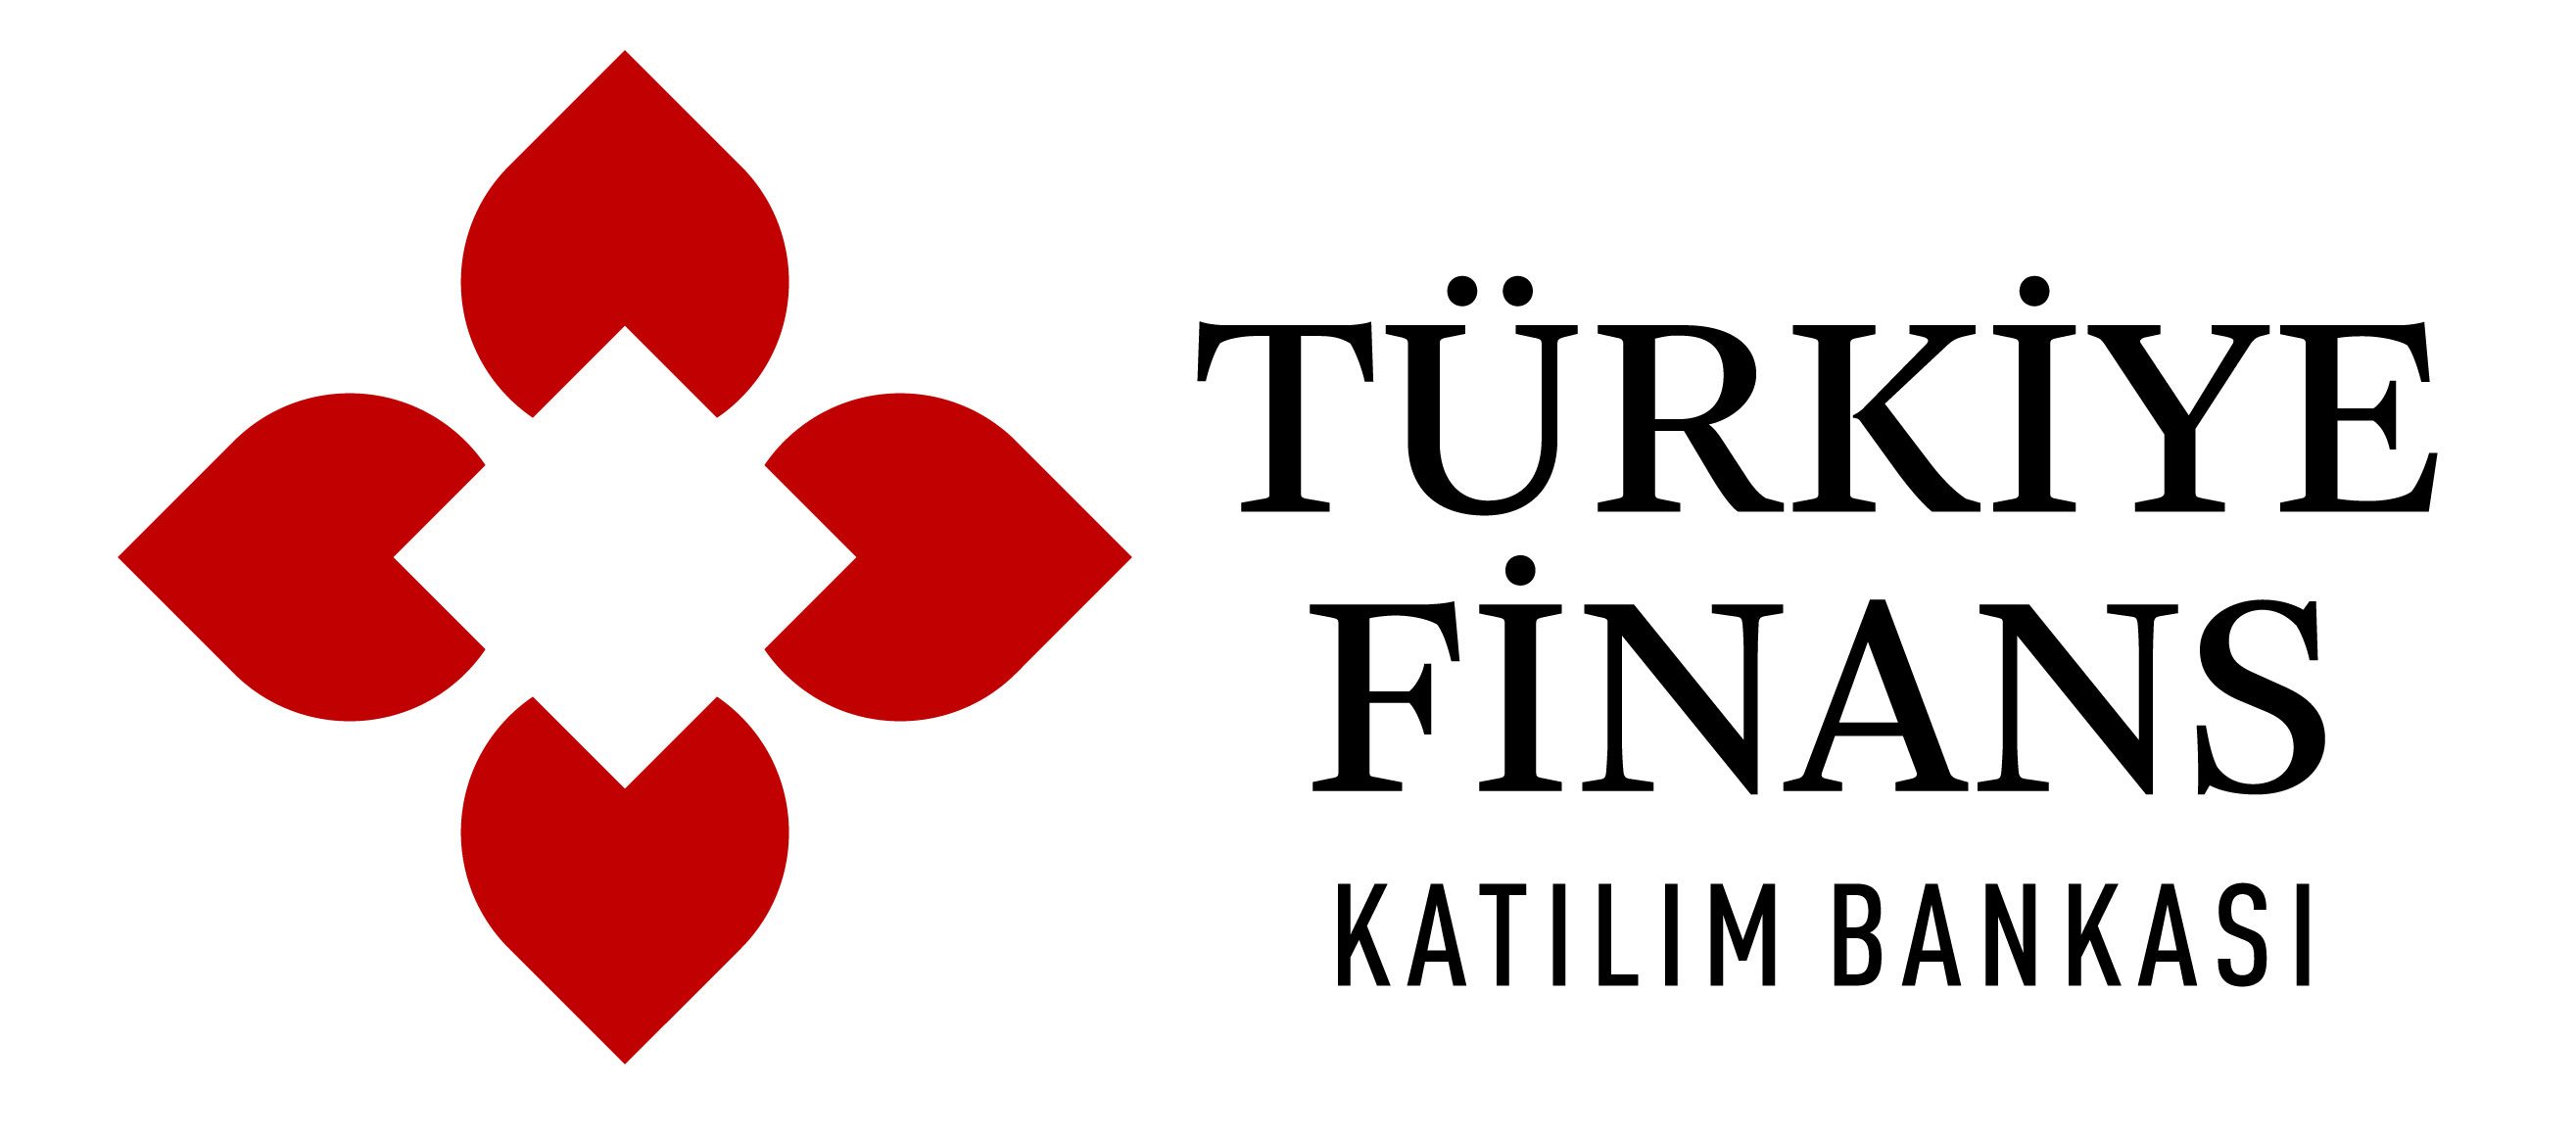 Turkiye Finans Katılım Bankası открывает дочернюю структуру в Бахрейне